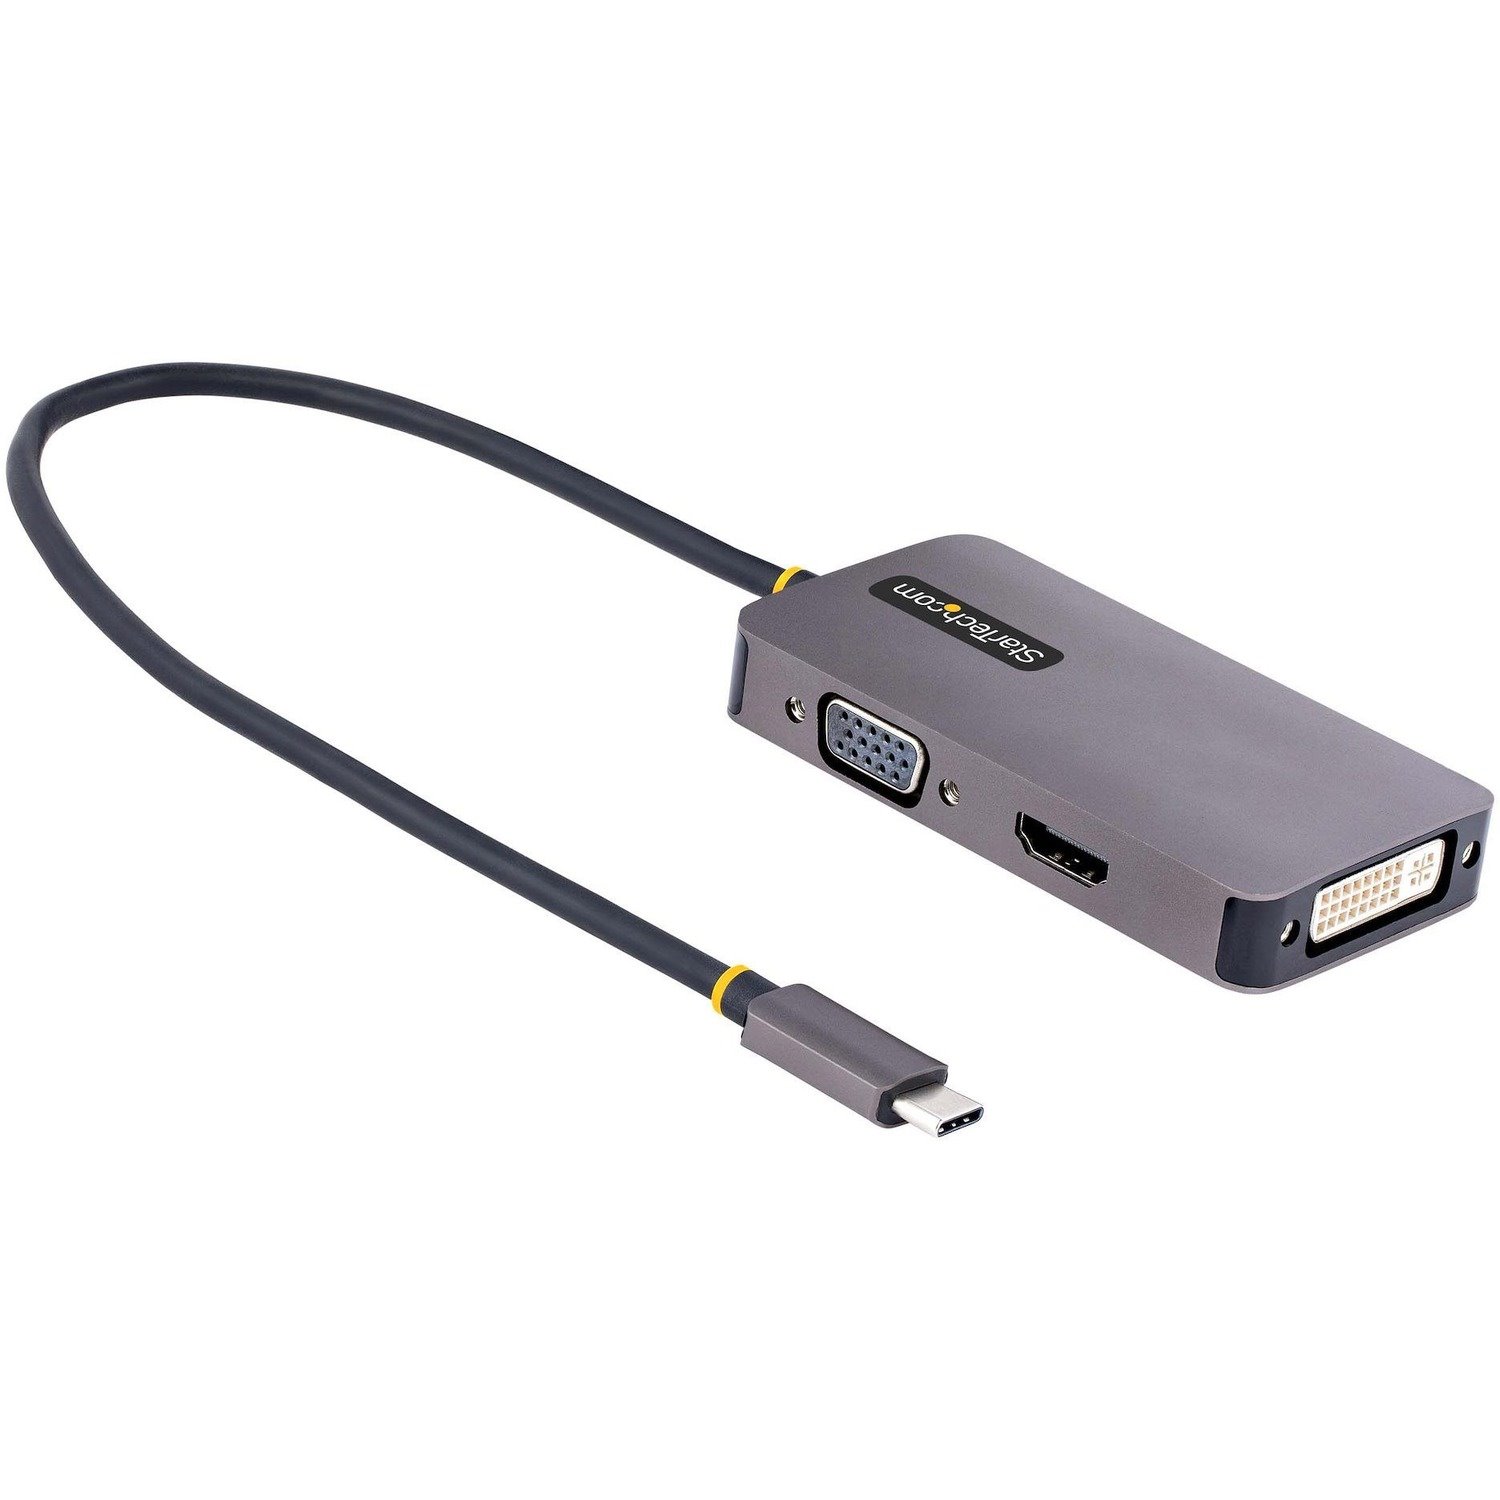 StarTech.com USB-C Multiport Video Adapter